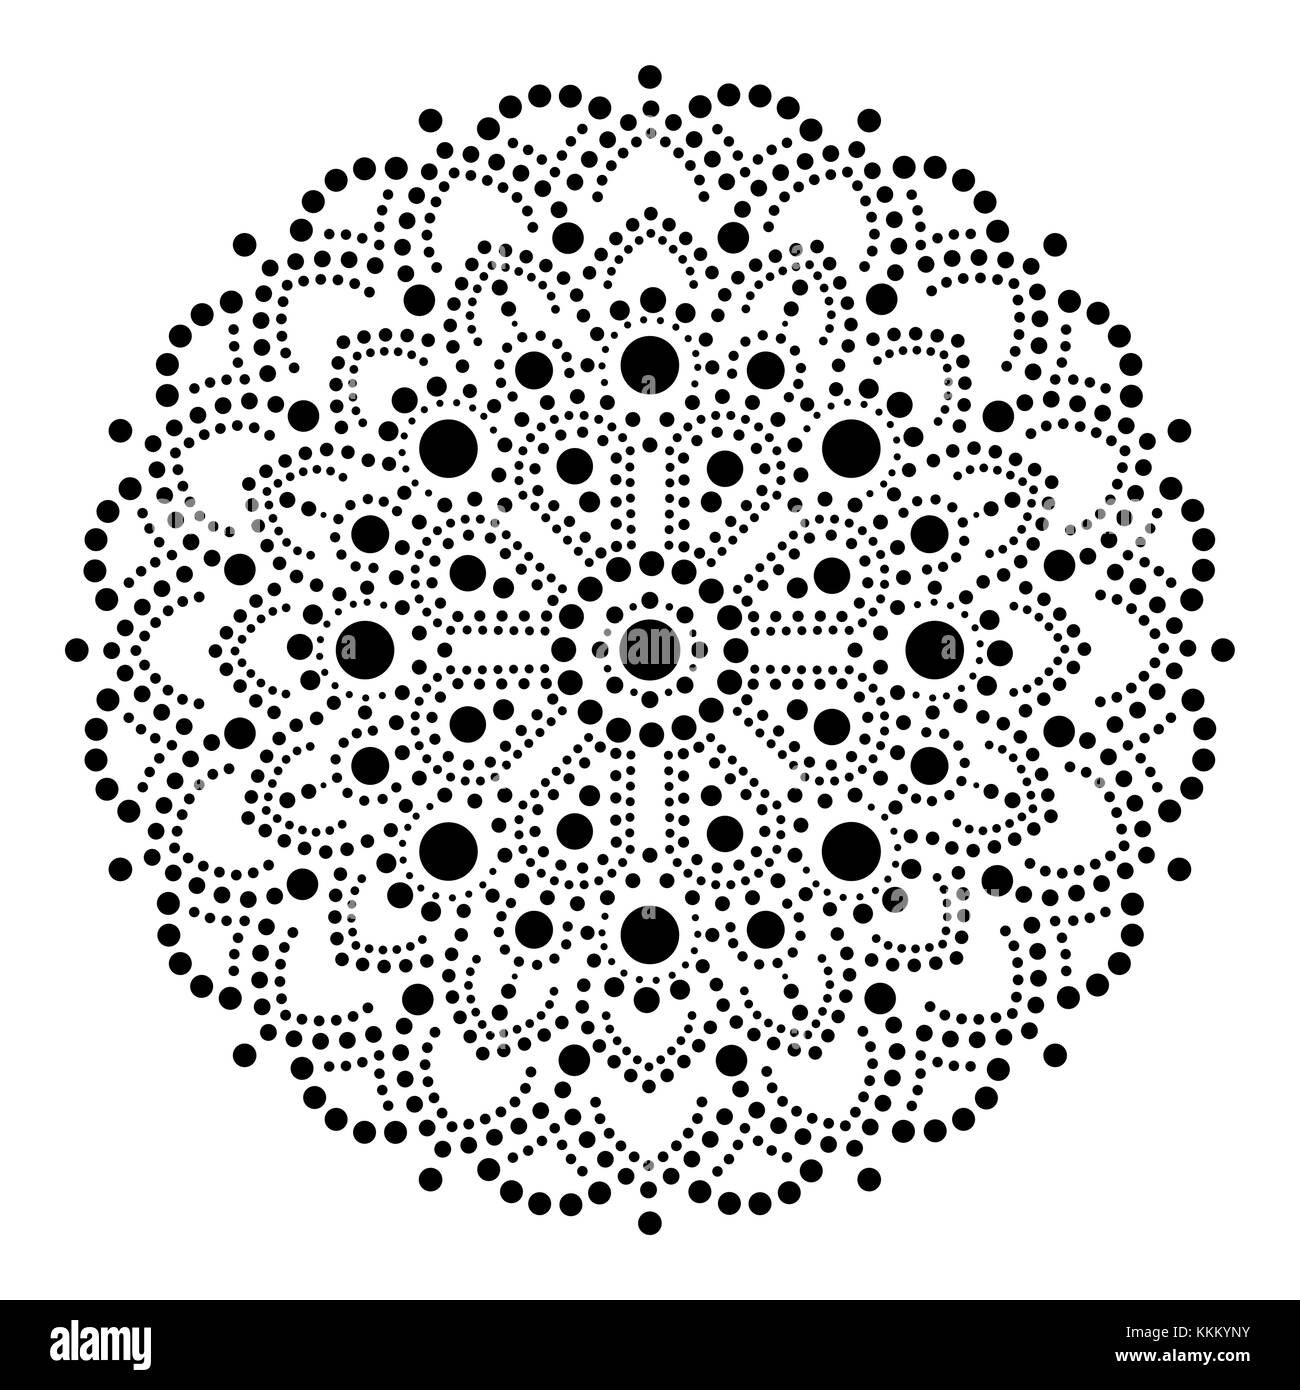 Aboriginal dot painting mandala, Australian Design ethnique tsigane, vector pattern dots en noir style ethnique Illustration de Vecteur